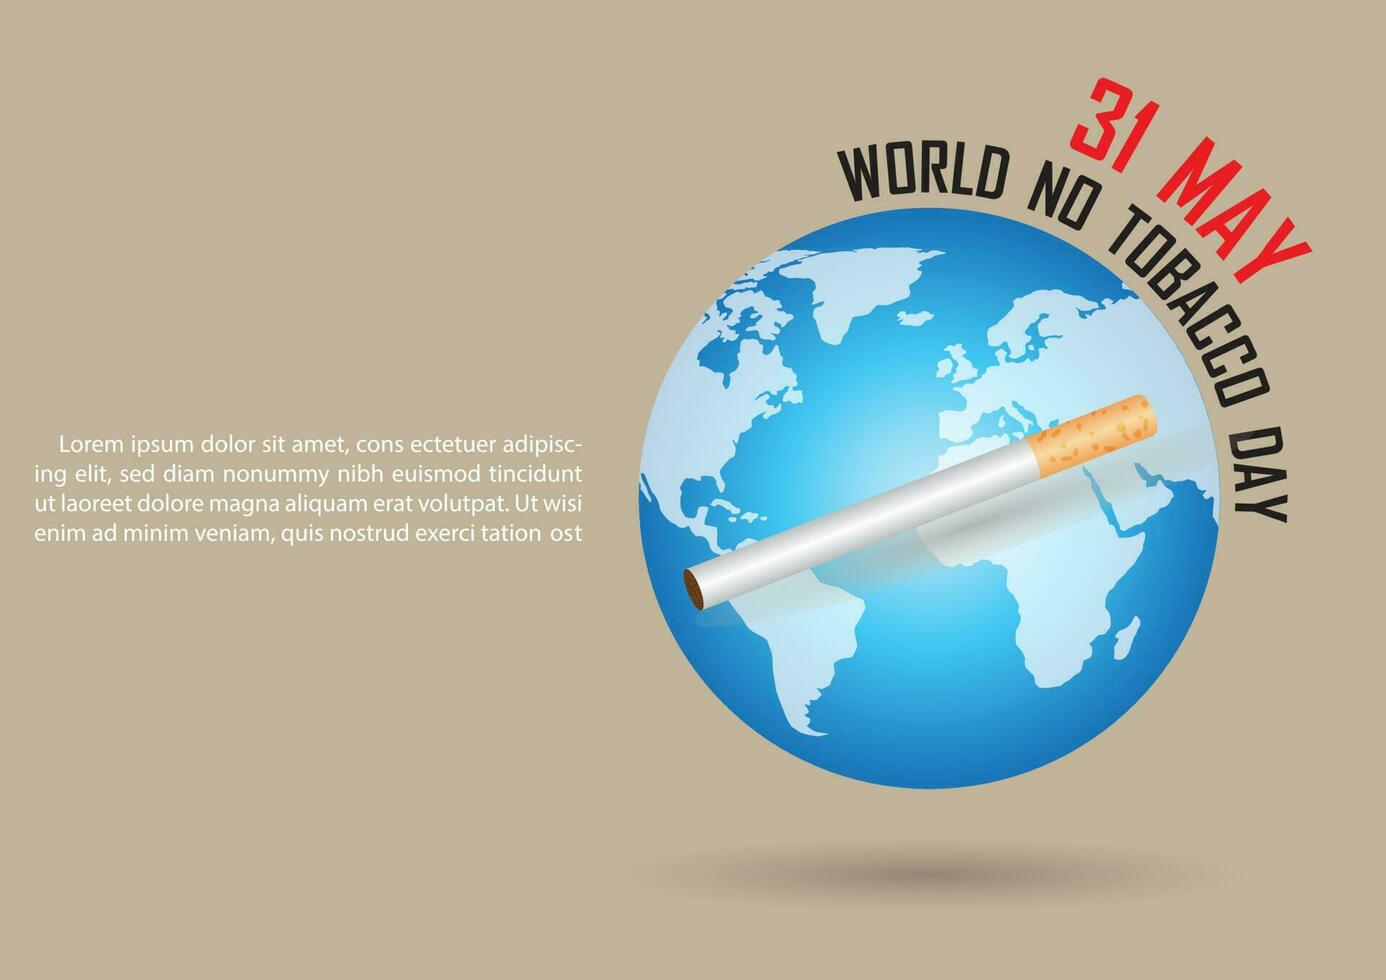 das Blau Erde schweben auf Fußboden mit 31 kann Welt Nein Tabak Kampagne Wortlaut und einer Zigarette Vorderseite von das Erde. alle im Vektor Design und isolieren auf Licht braun Hintergrund.